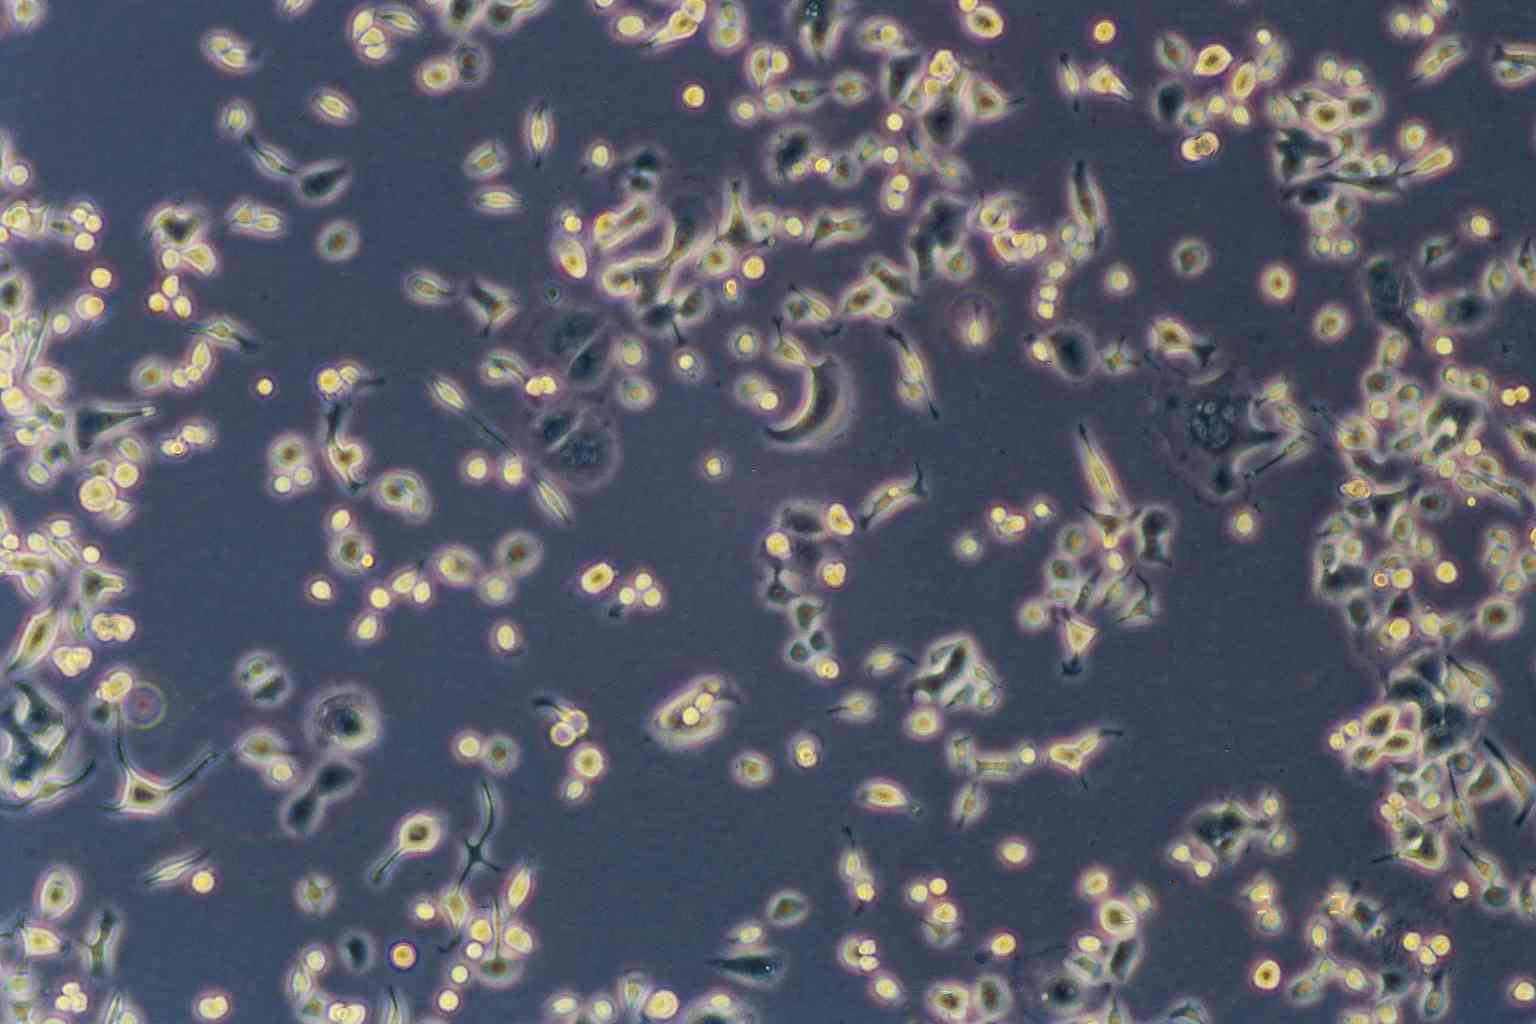 SHG-44 epithelioid cells人胶质瘤细胞系